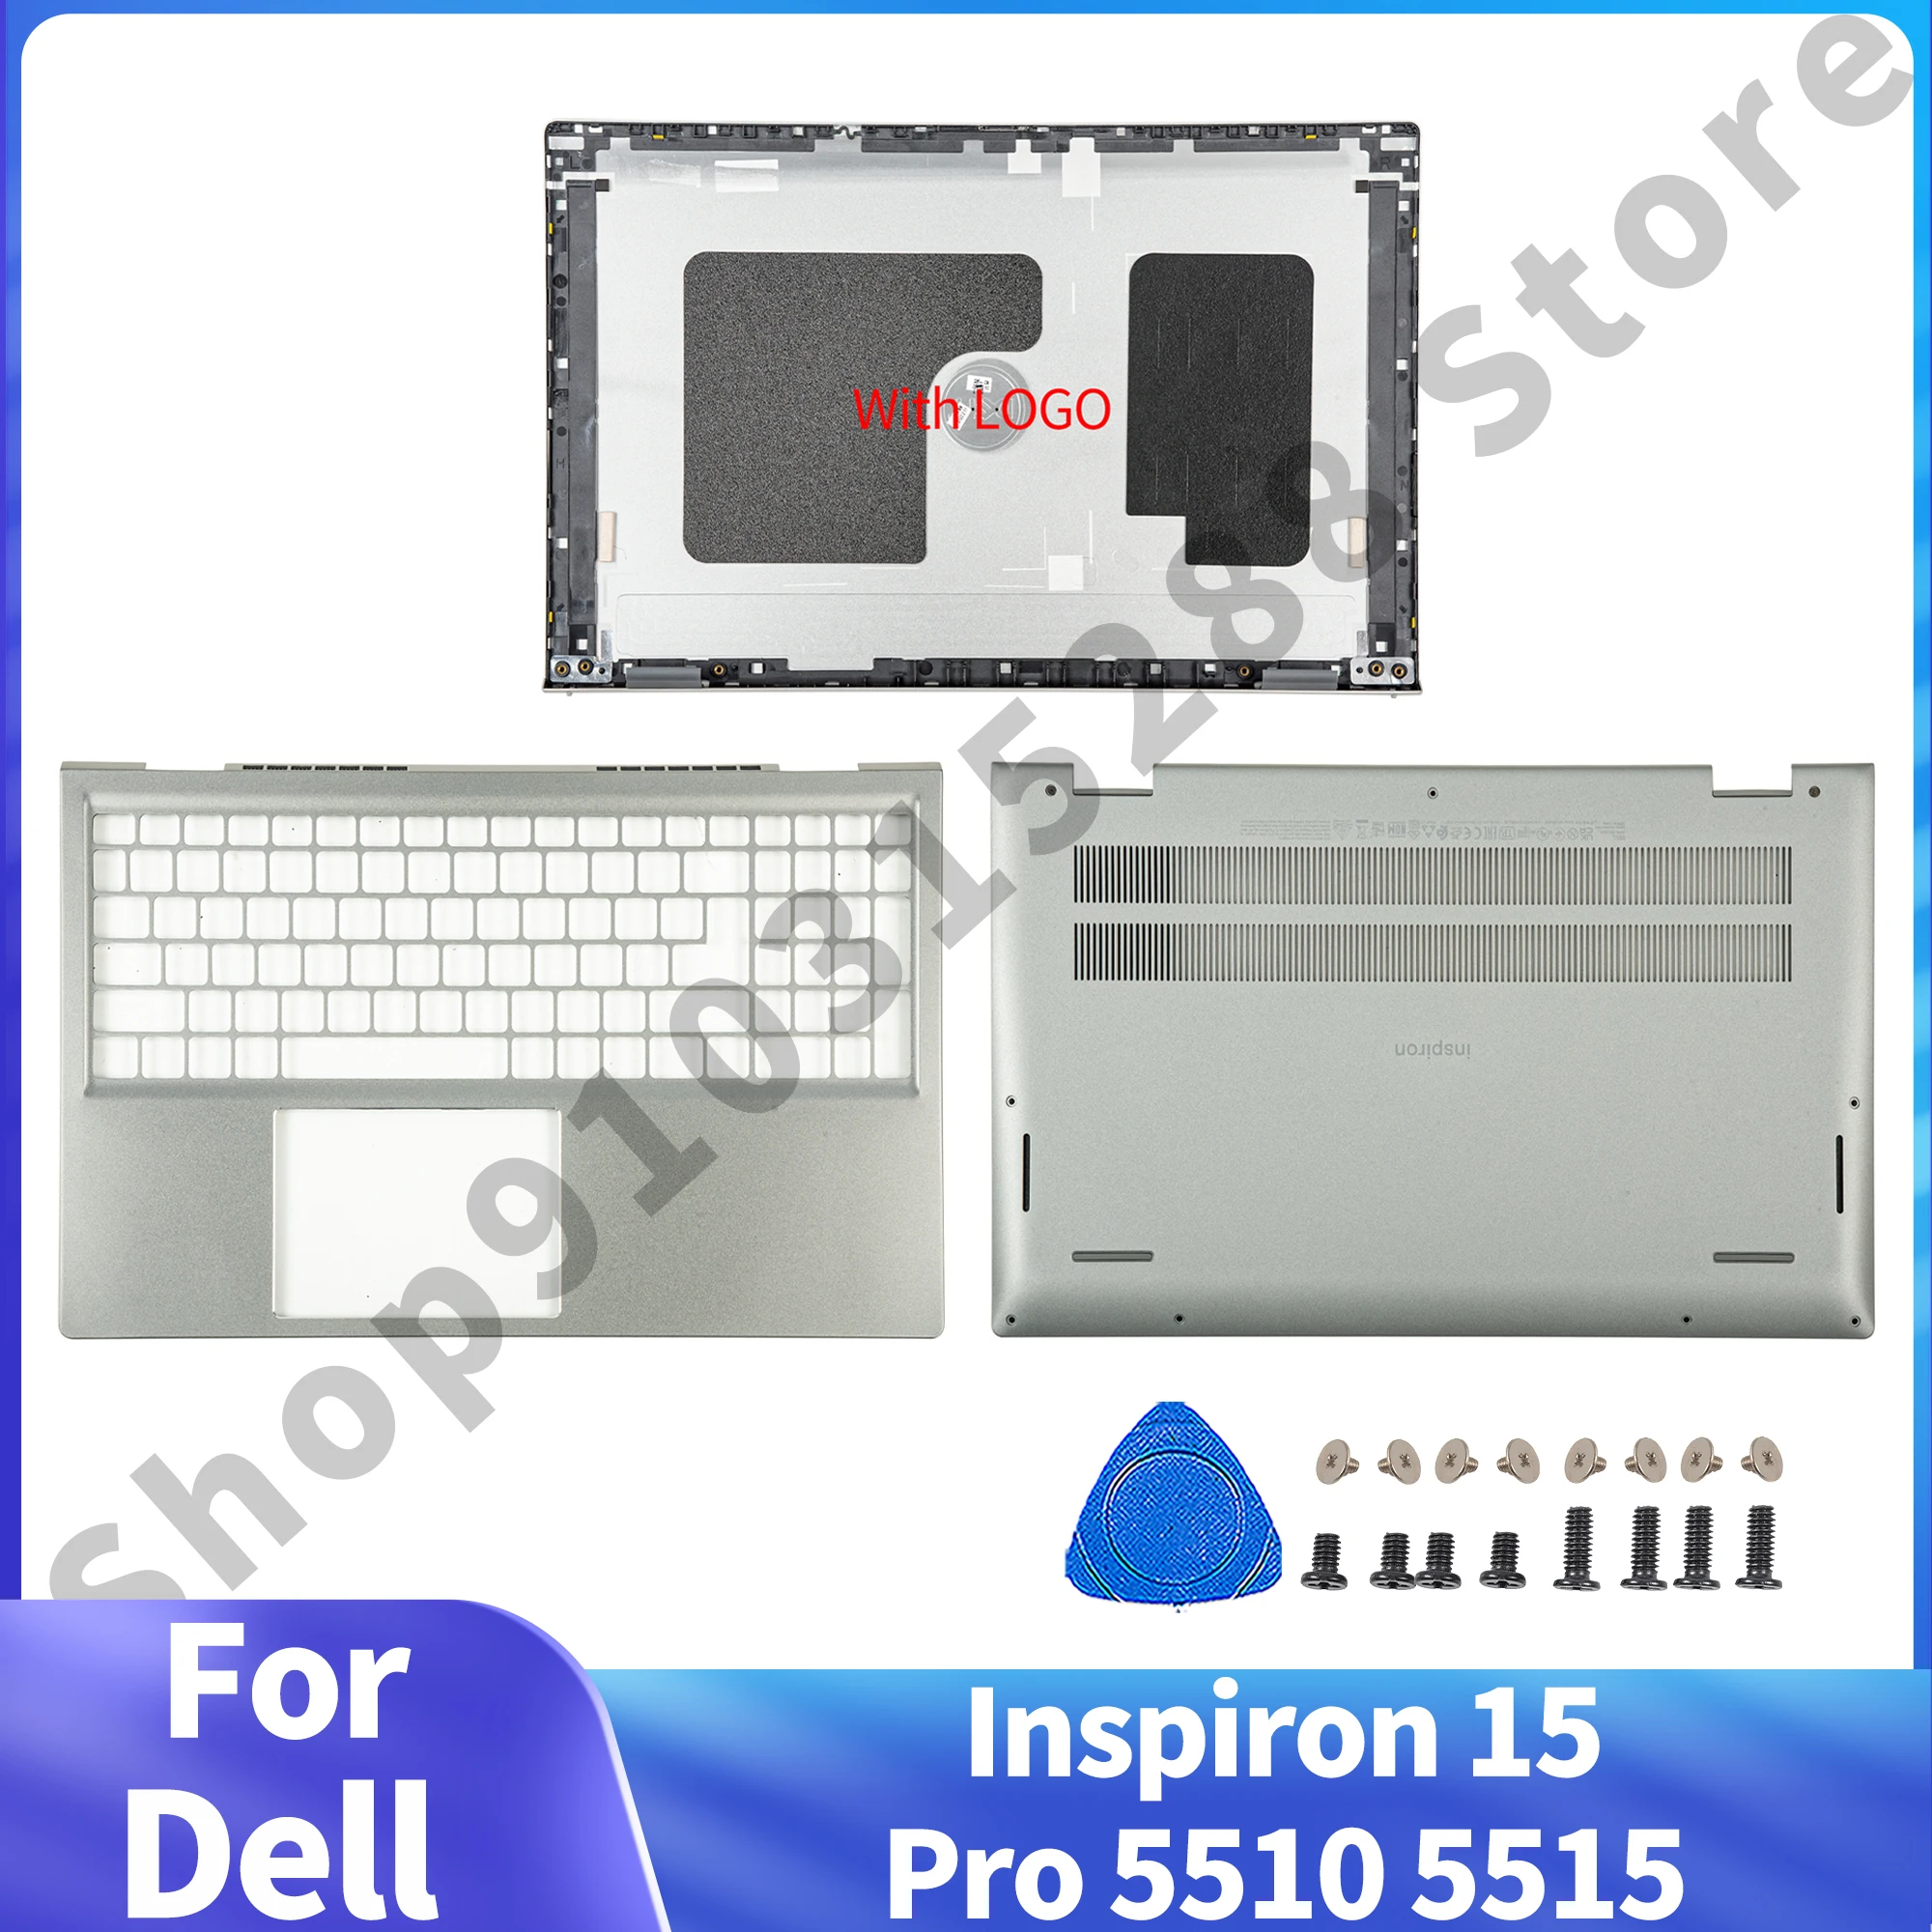 

Новинка, корпус для ноутбука, внешняя деталь для Dell Inspiron 15 Pro 5510 5515, алюминиевая задняя крышка с ЖК-дисплеем, металлическая подставка для рук, задняя крышка, цвет серый